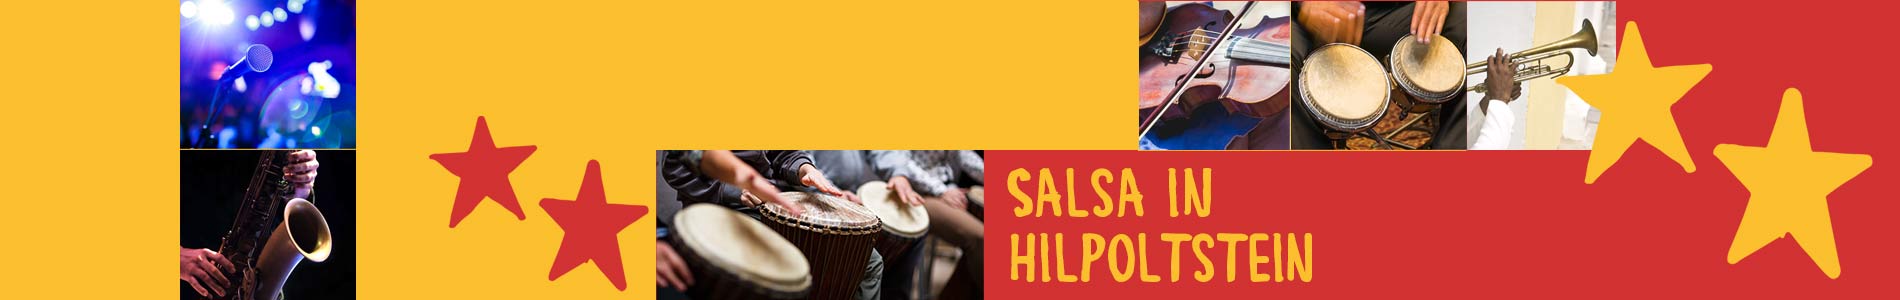 Salsa in Hilpoltstein – Salsa lernen und tanzen, Tanzkurse, Partys, Veranstaltungen